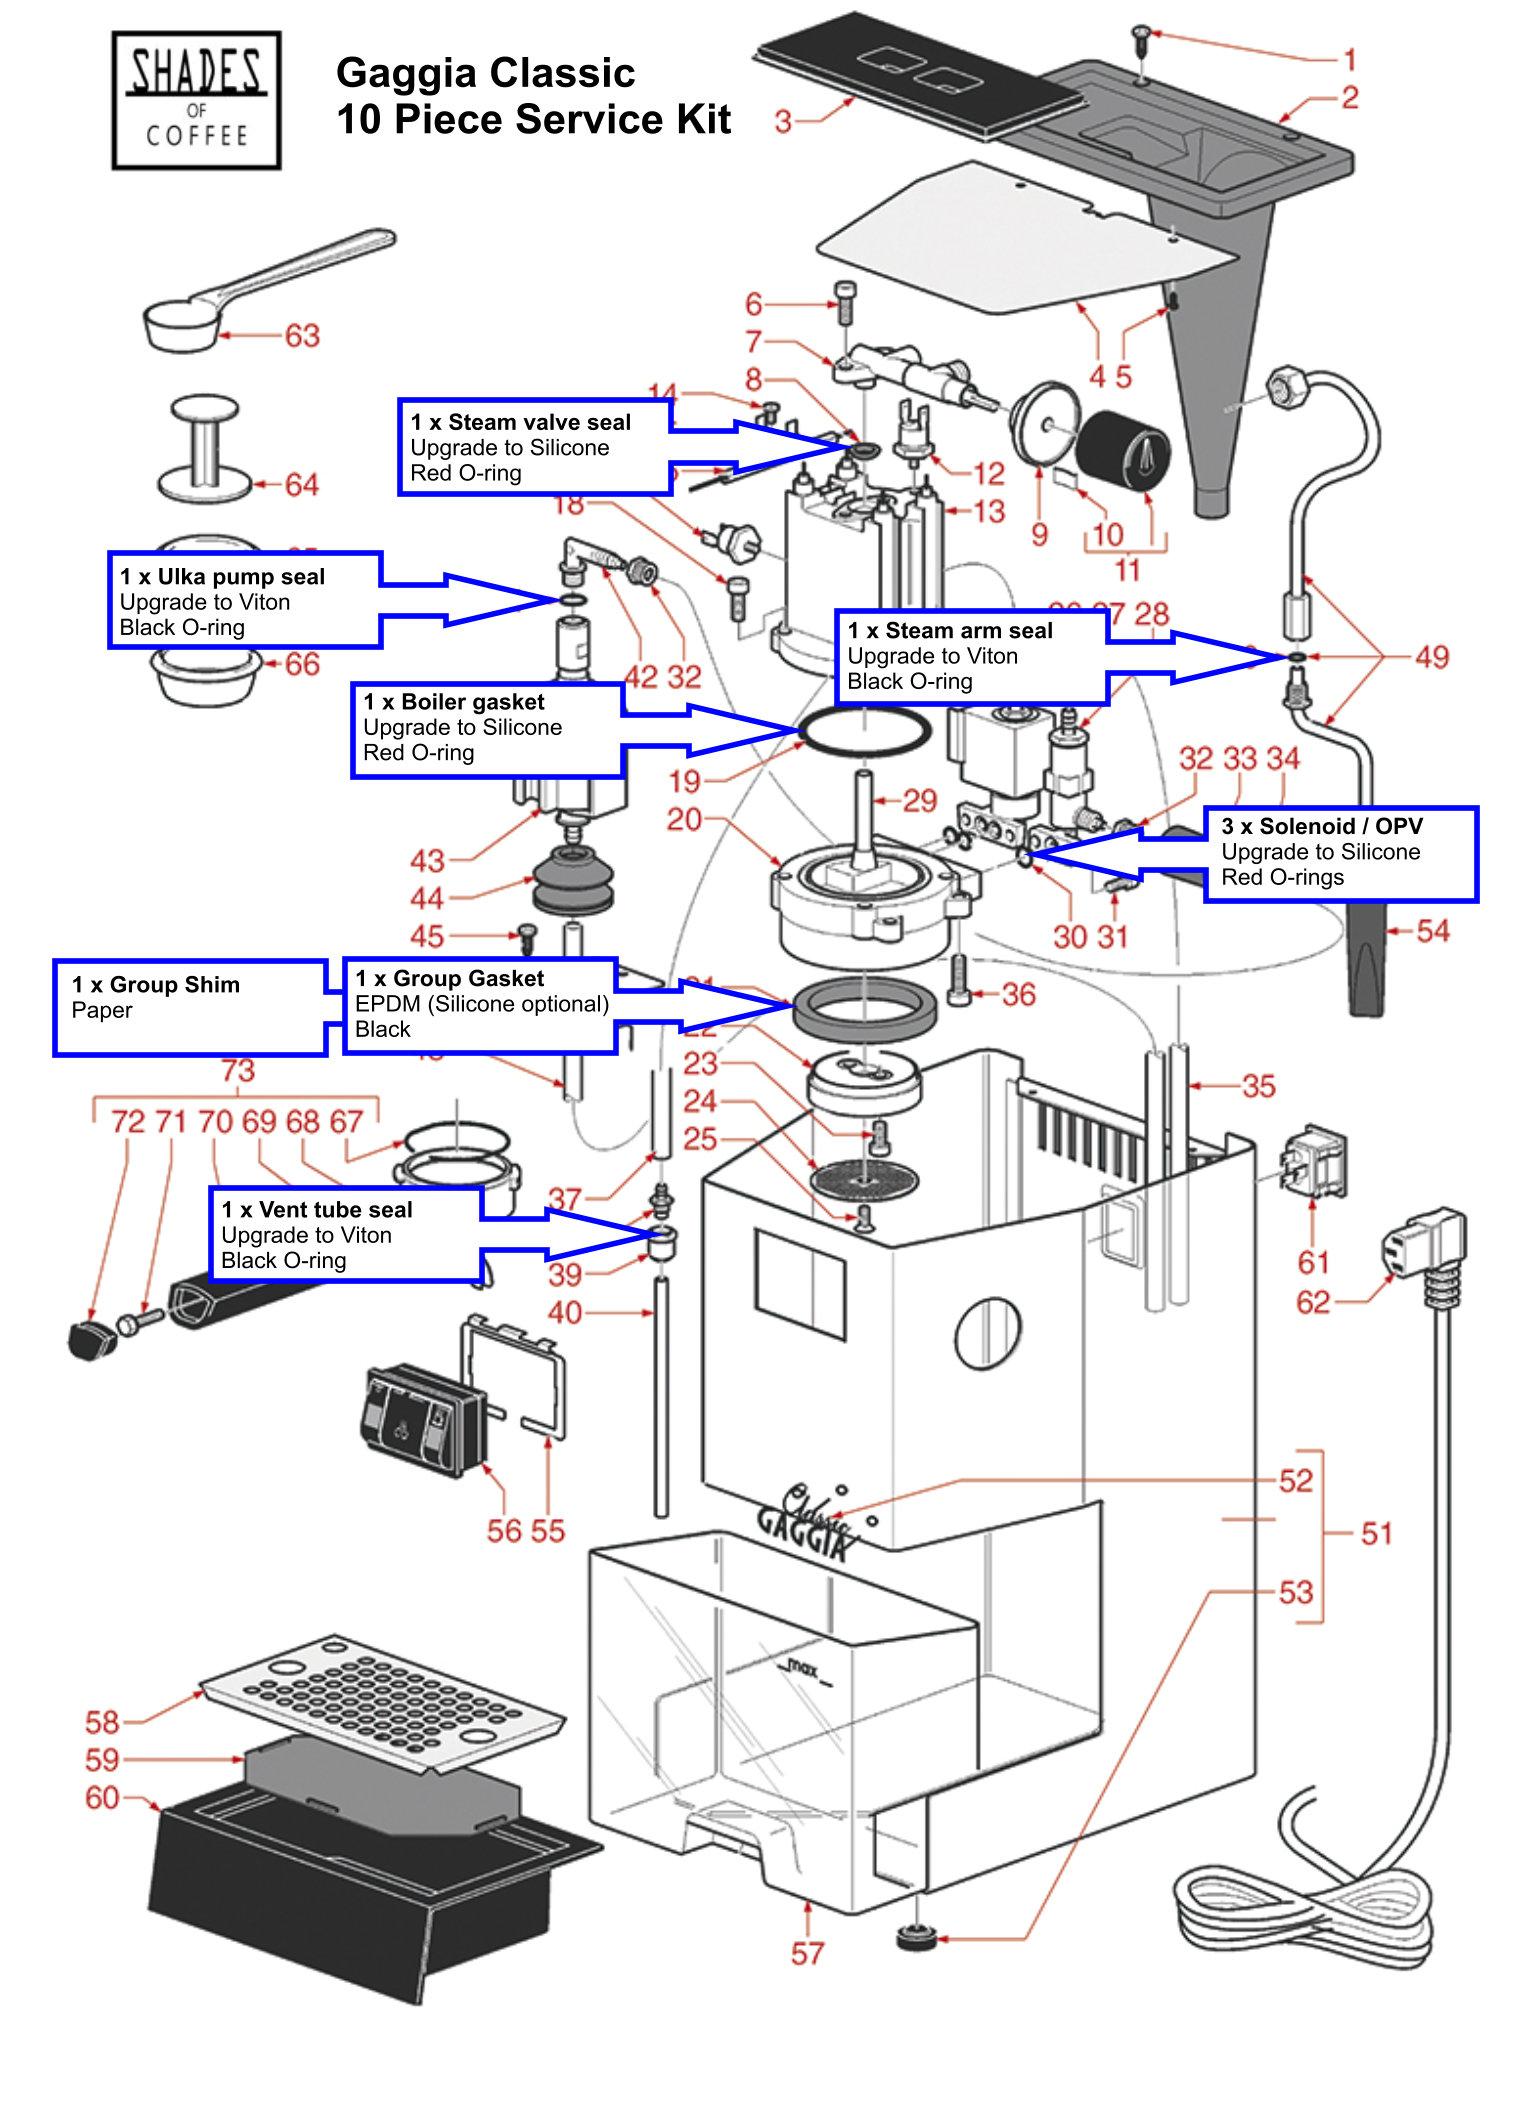 Service kit diagram